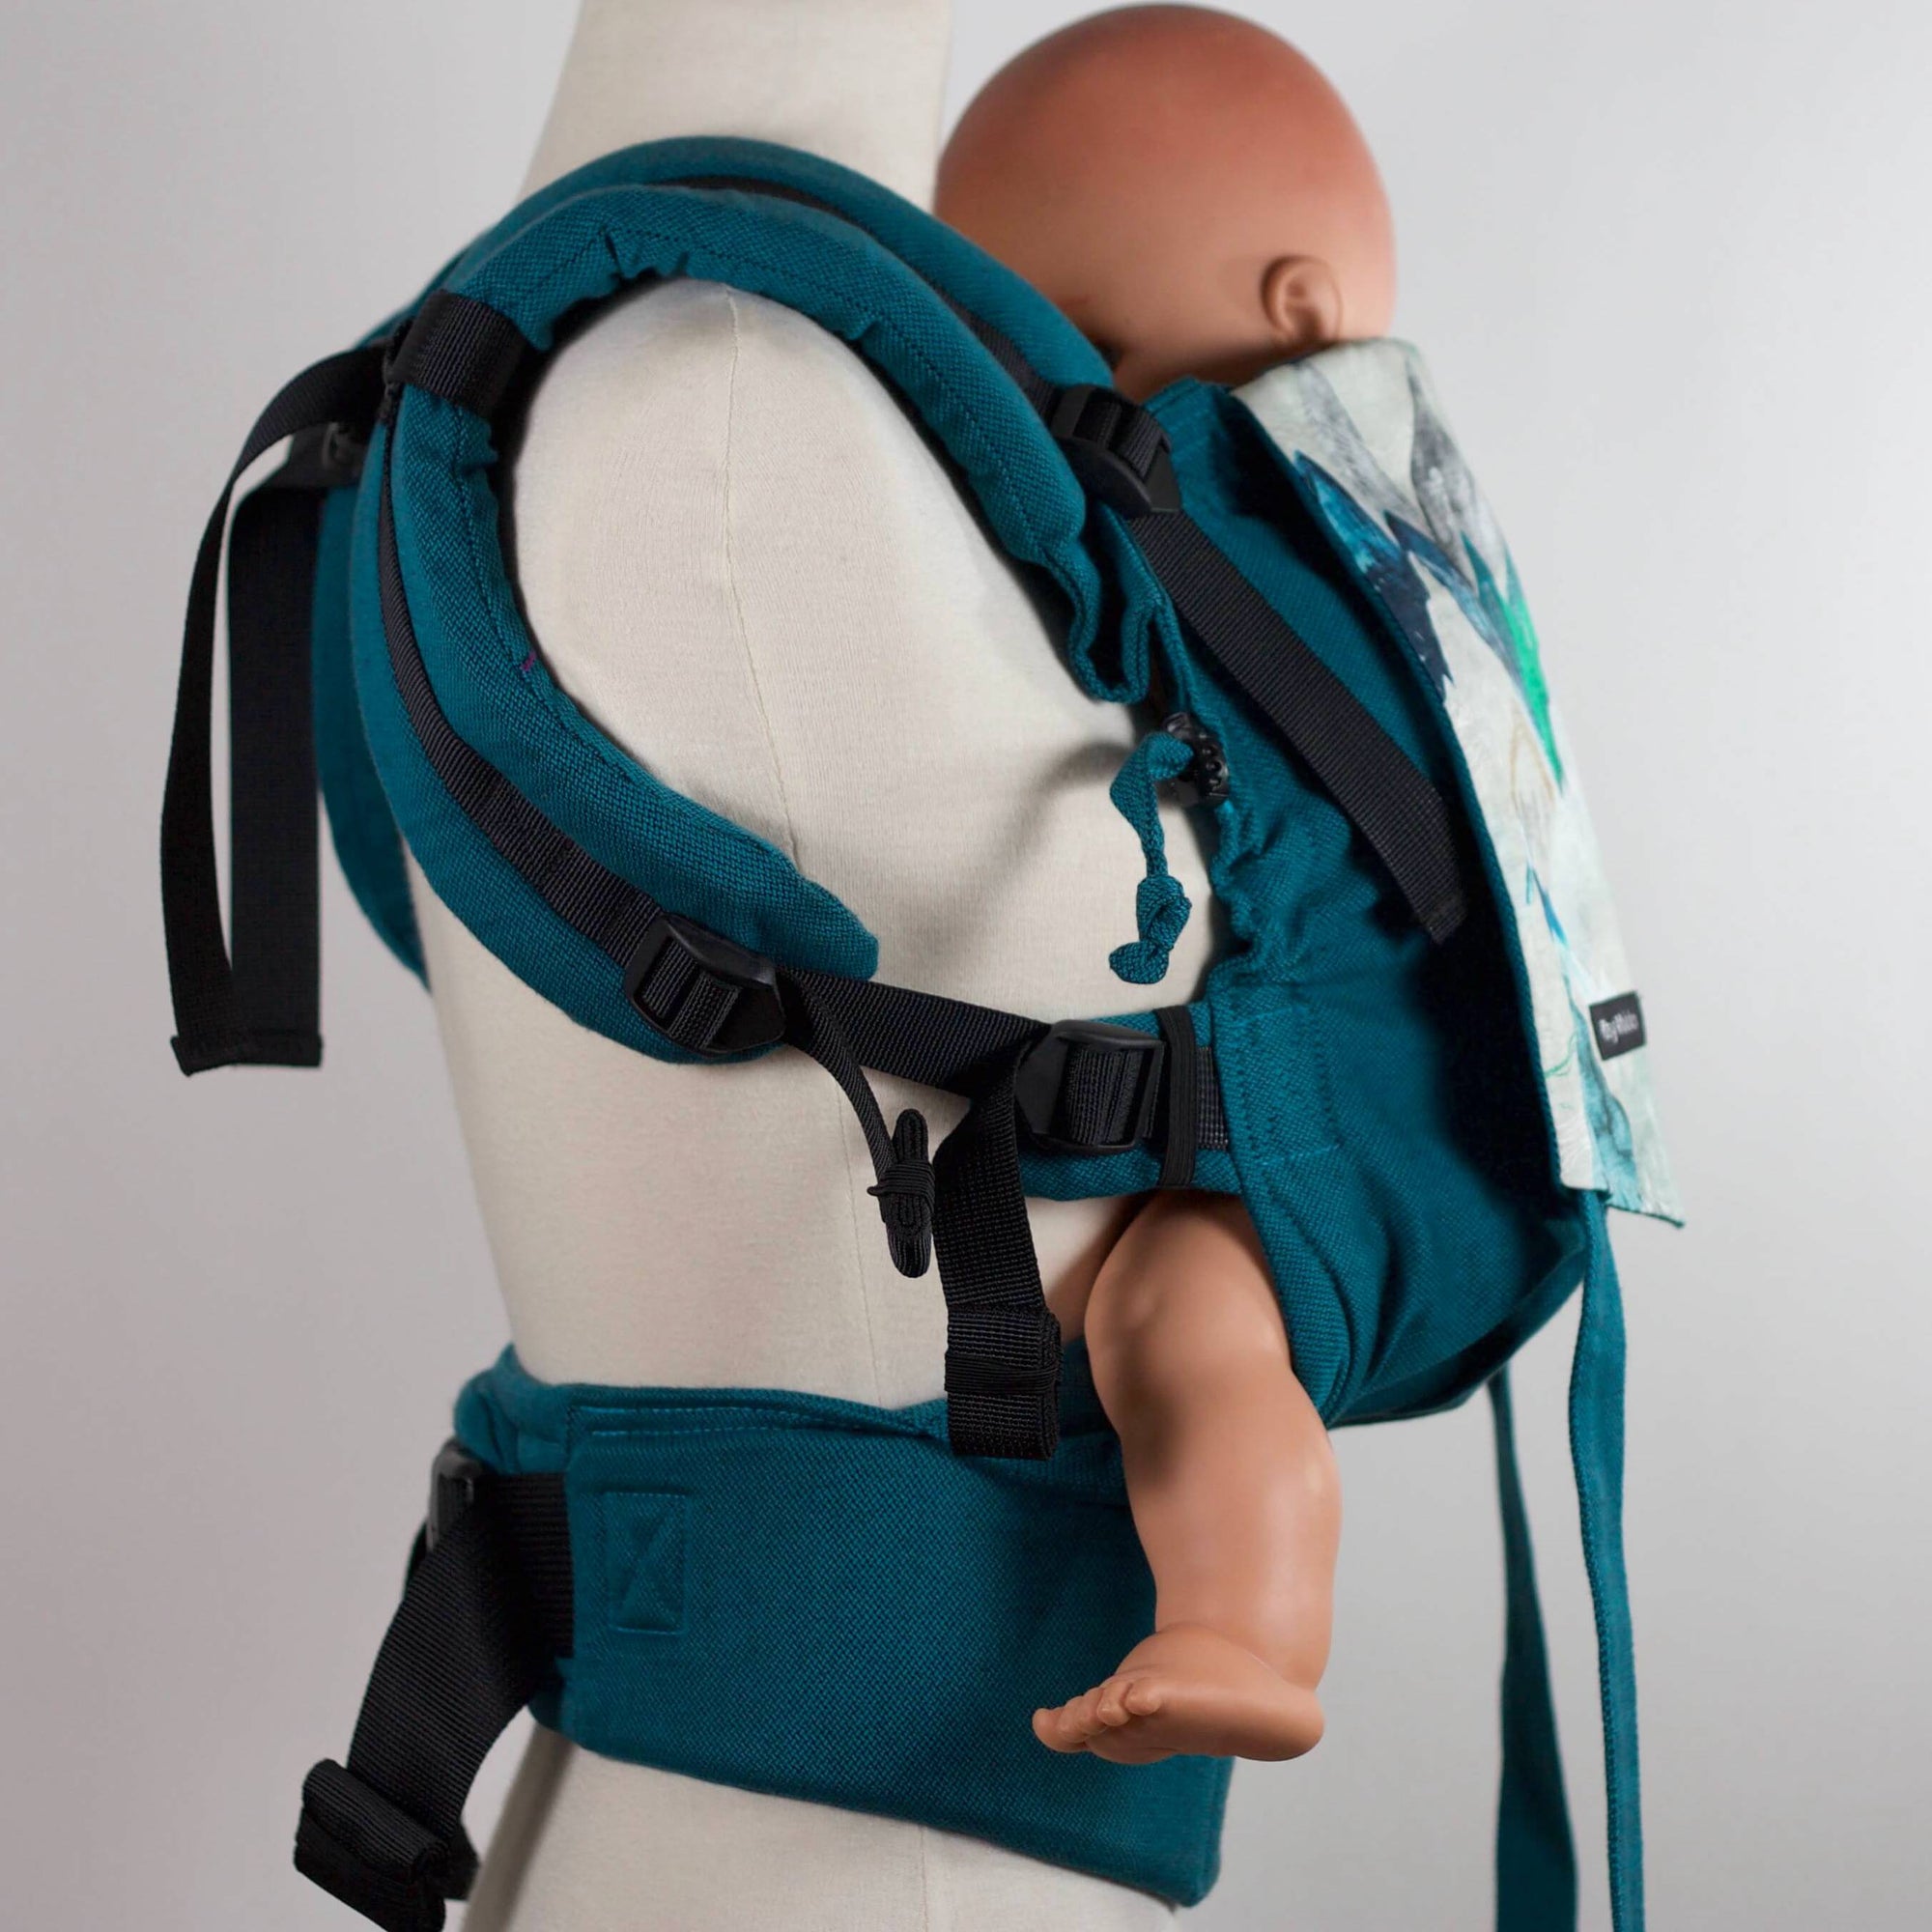 Porte-bébé cliptsy ceinture à clip et réglages pas sangles. Très confortable.